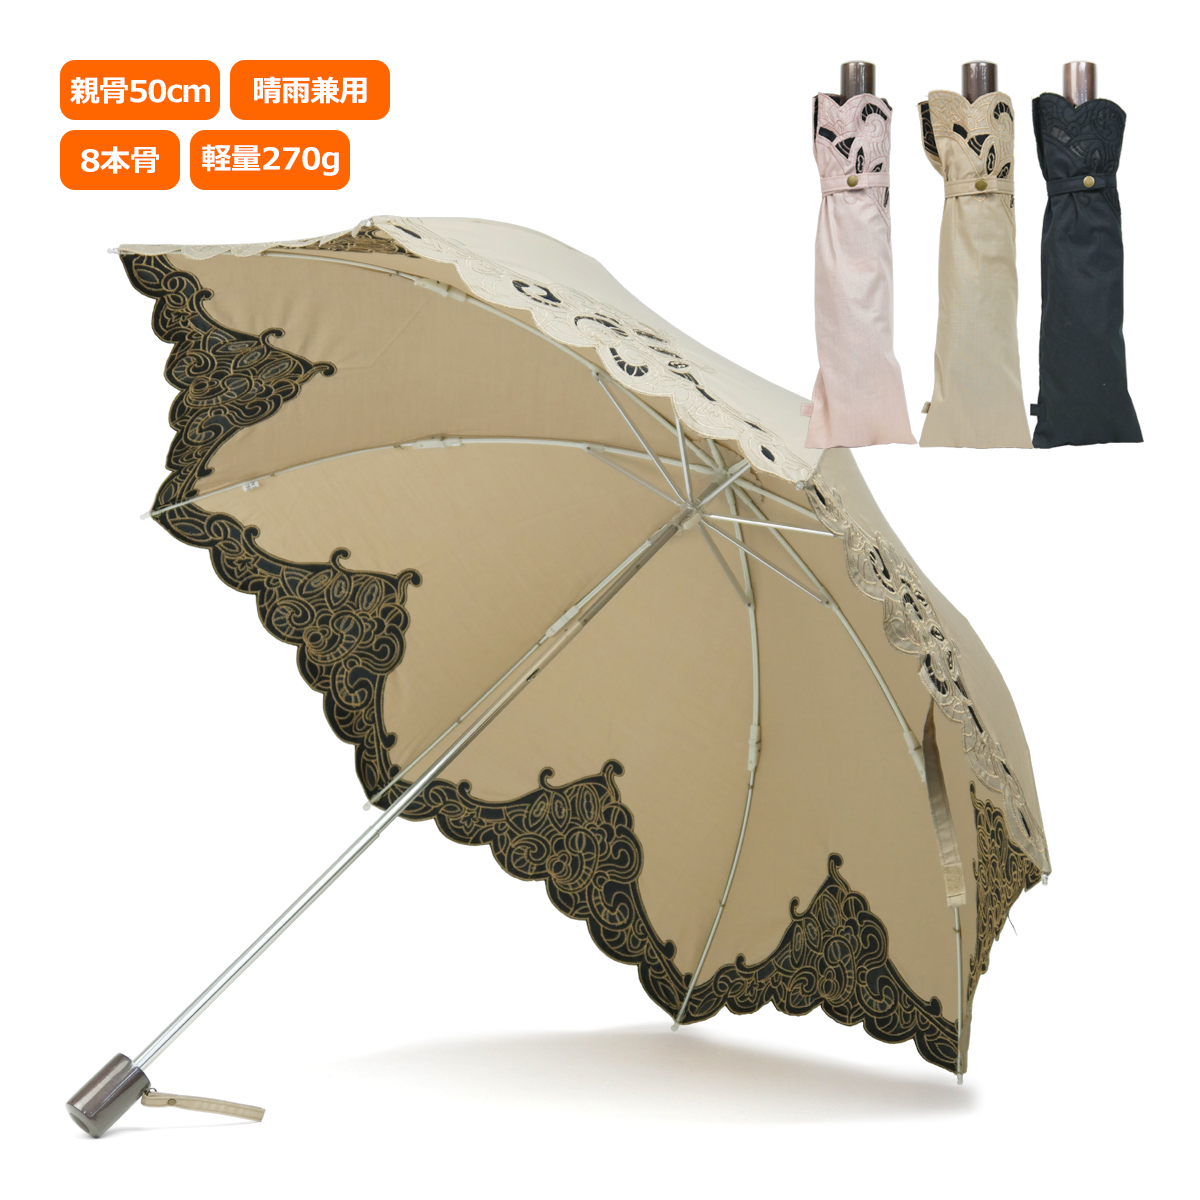 日傘 折りたたみ傘 おすすめ 晴雨兼用 レディース レディス 軽量 おしゃれ UV 50cm 8本骨 オーガンジーレース エンブロイダリー